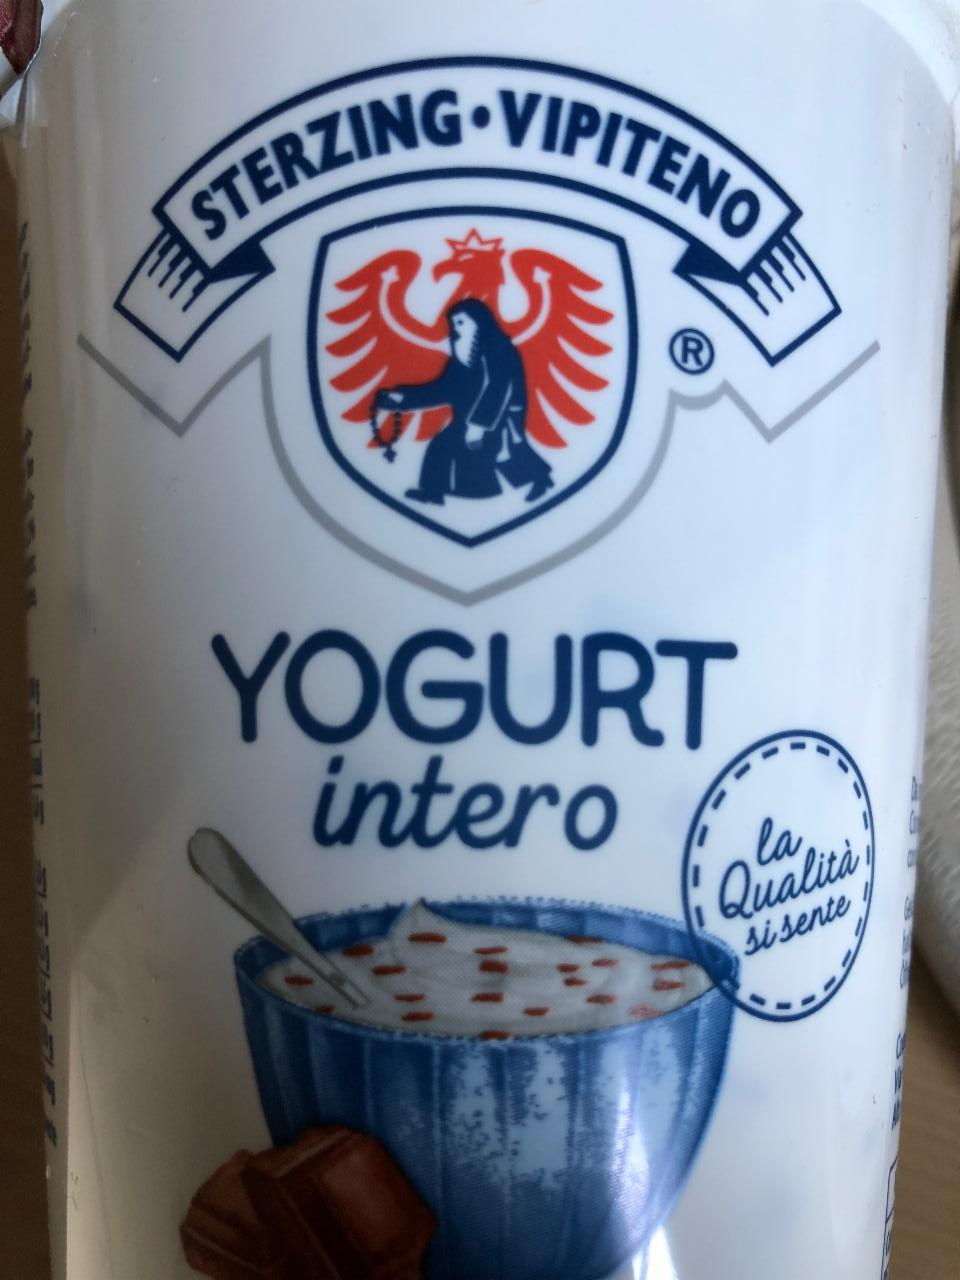 Fotografie - Yogurt intero Stracciatella Sterzing Vipiteno